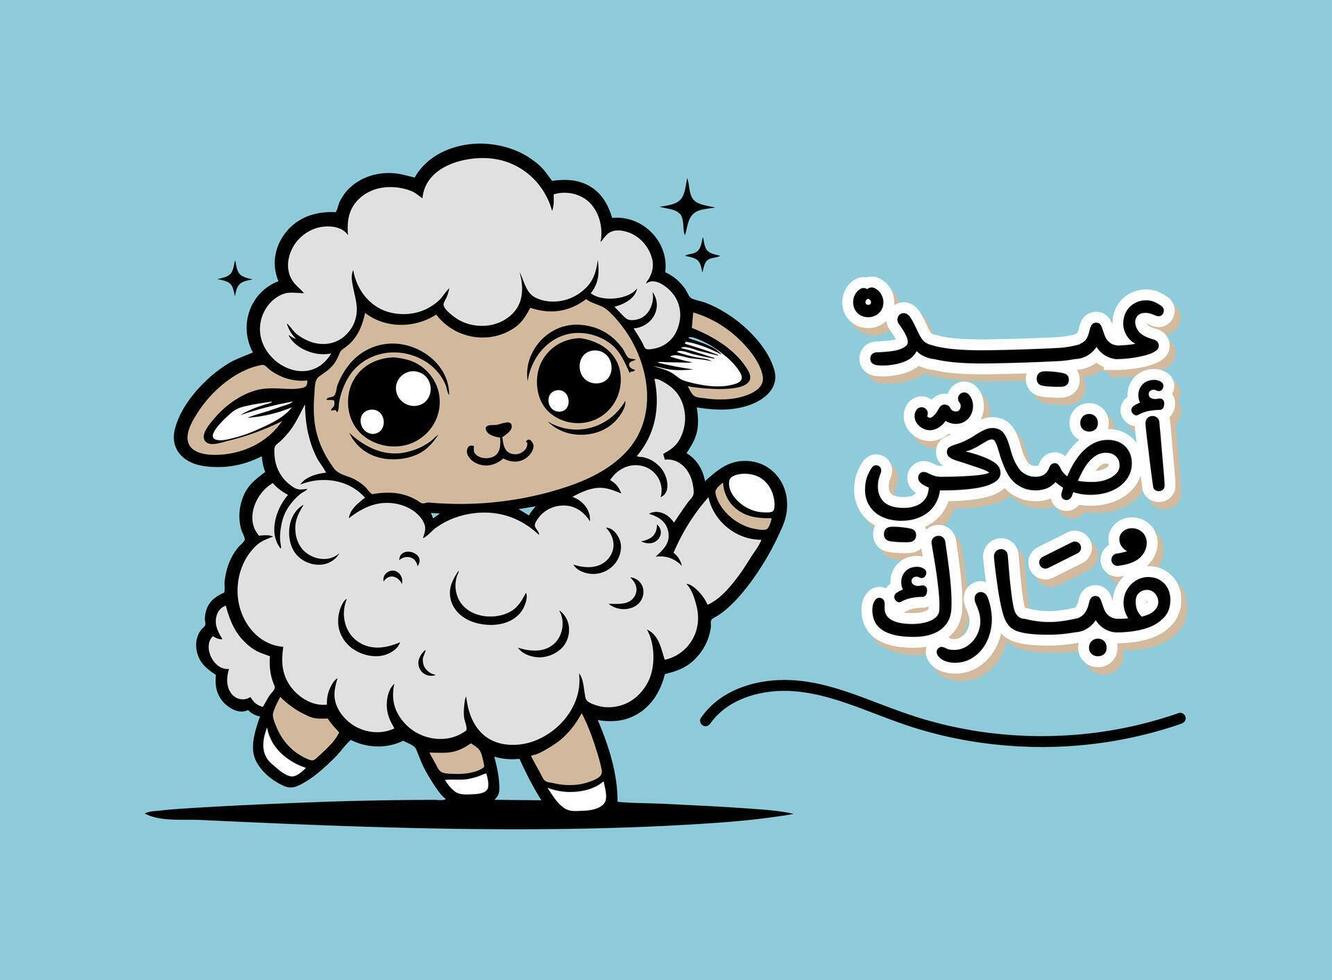 Übersetzung eid adha Mubarak im Arabisch Sprache mit ein Schaf Karikatur Comic Charakter Gruß Karte Design vektor